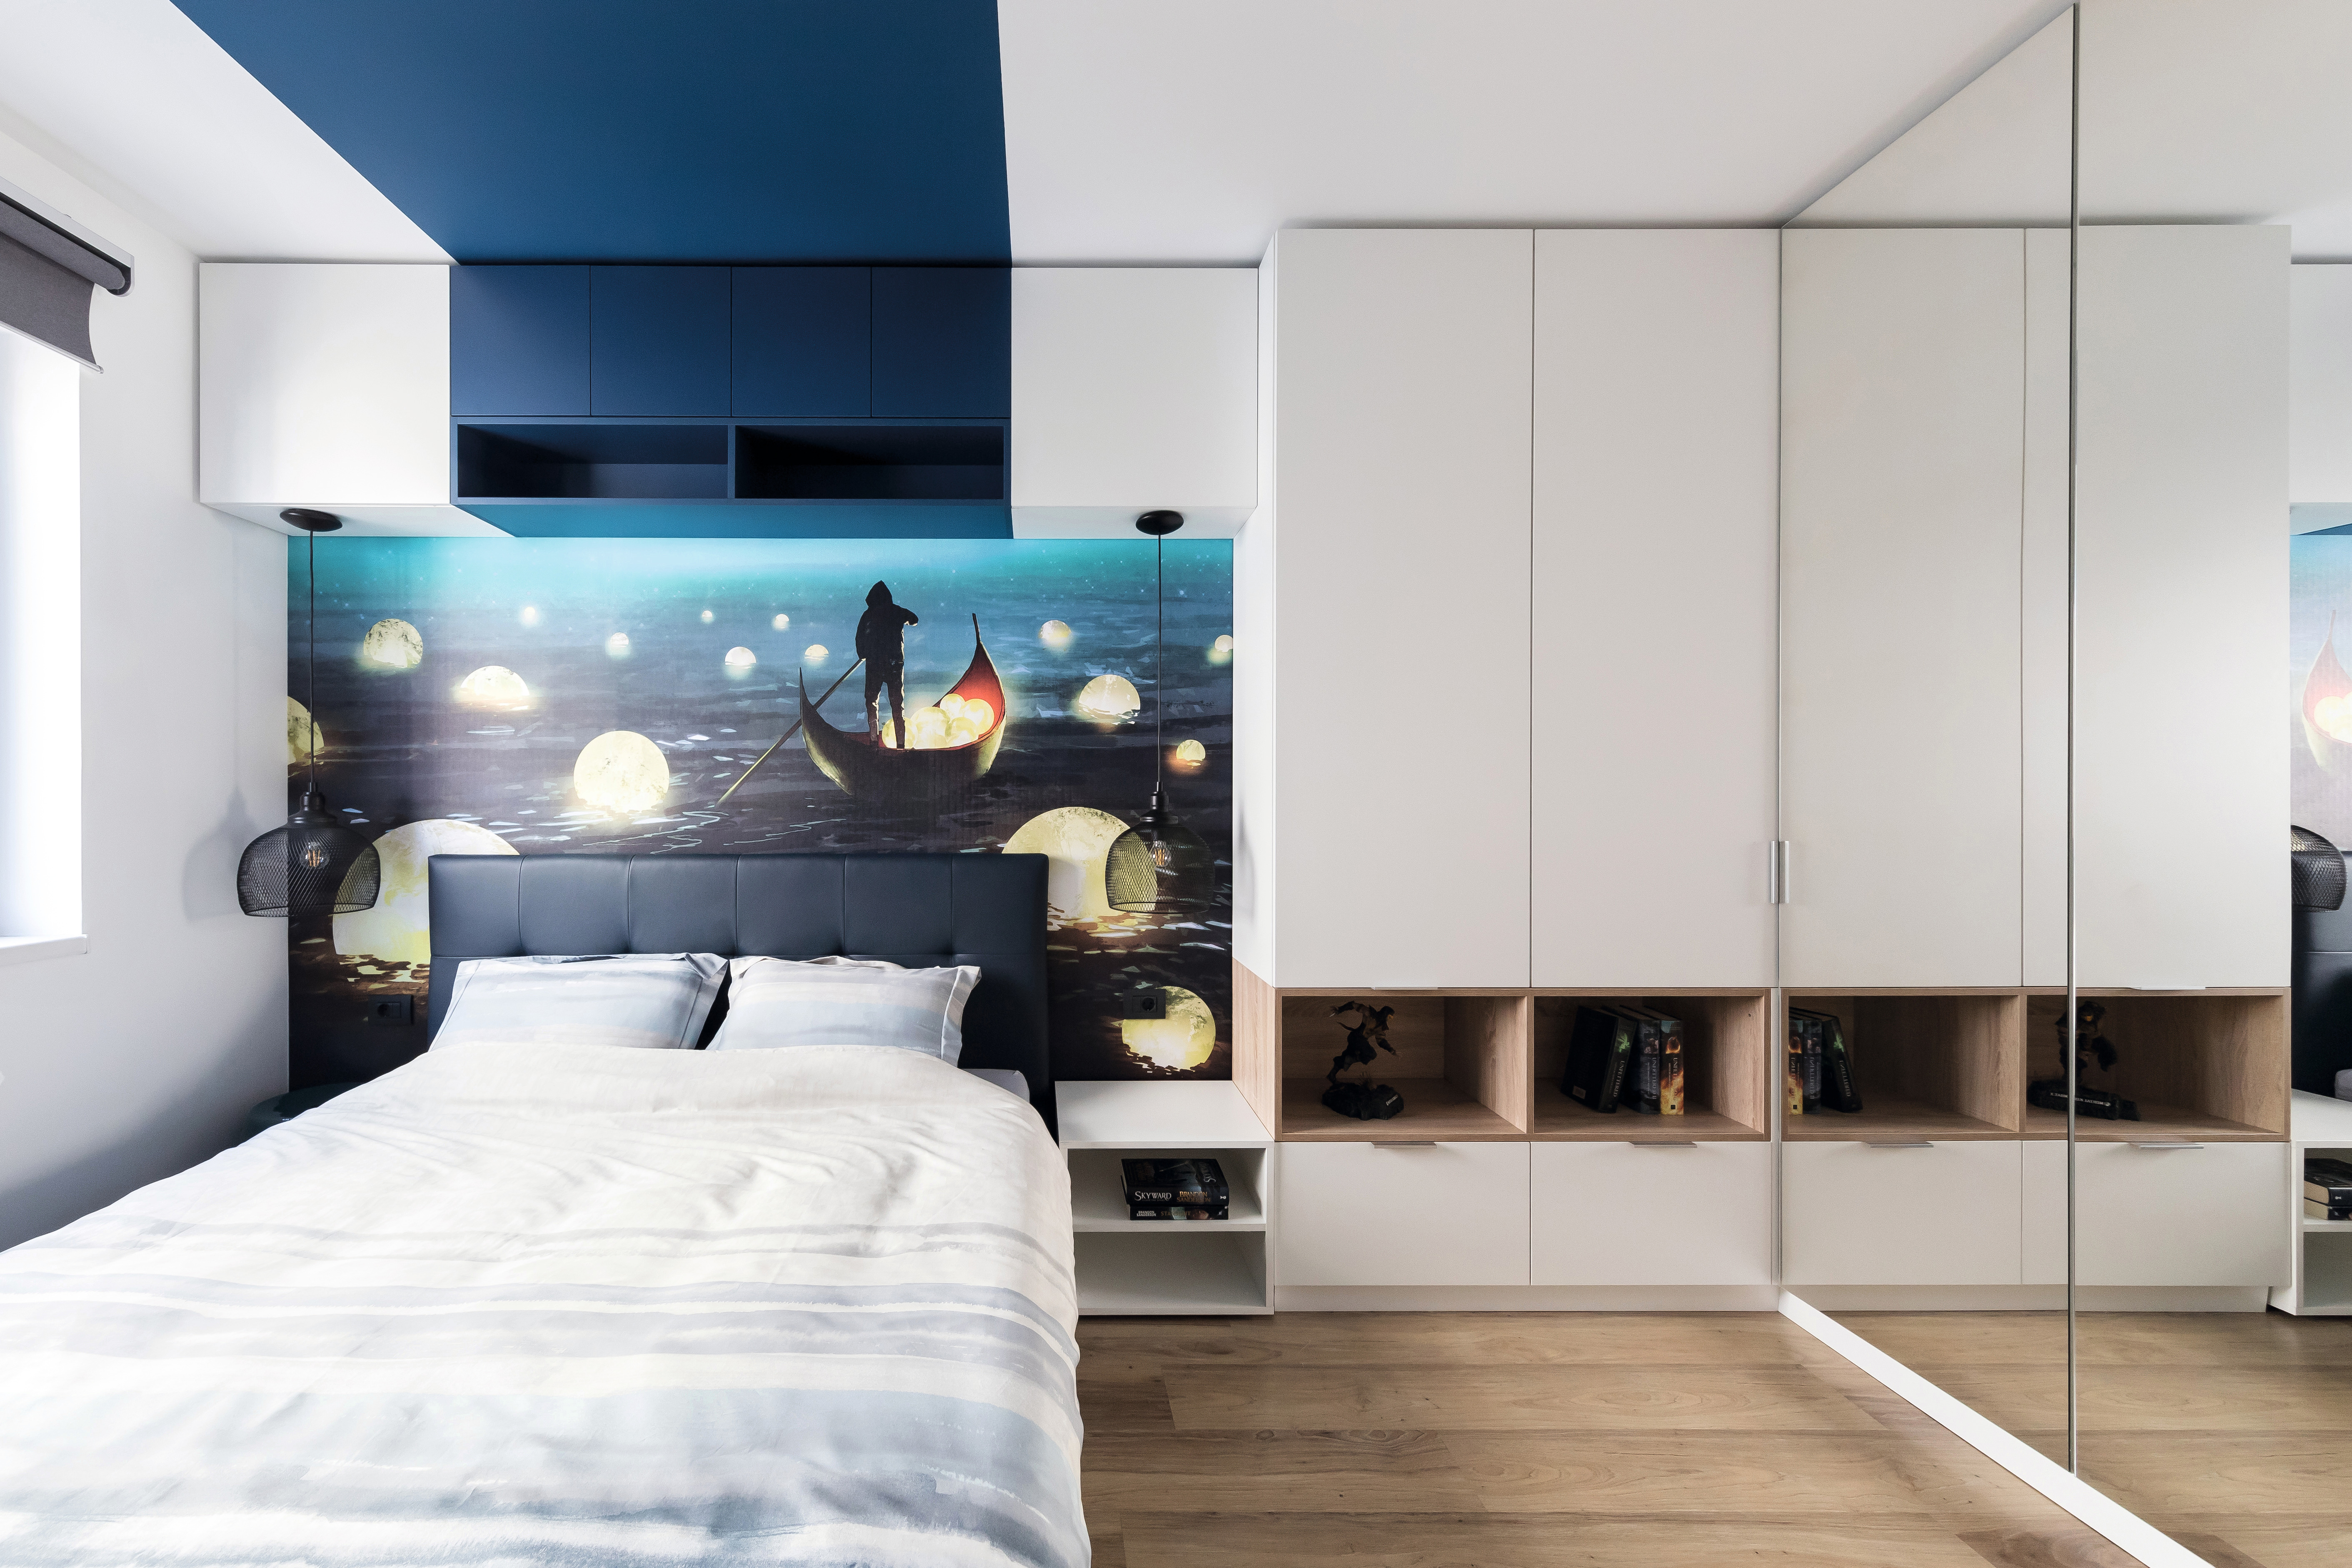 Ozračje kao iz snova u spavaćoj sobi s dekorima U504 ST9 Tirolsko plava i W1000 ST9 Premium bijela.